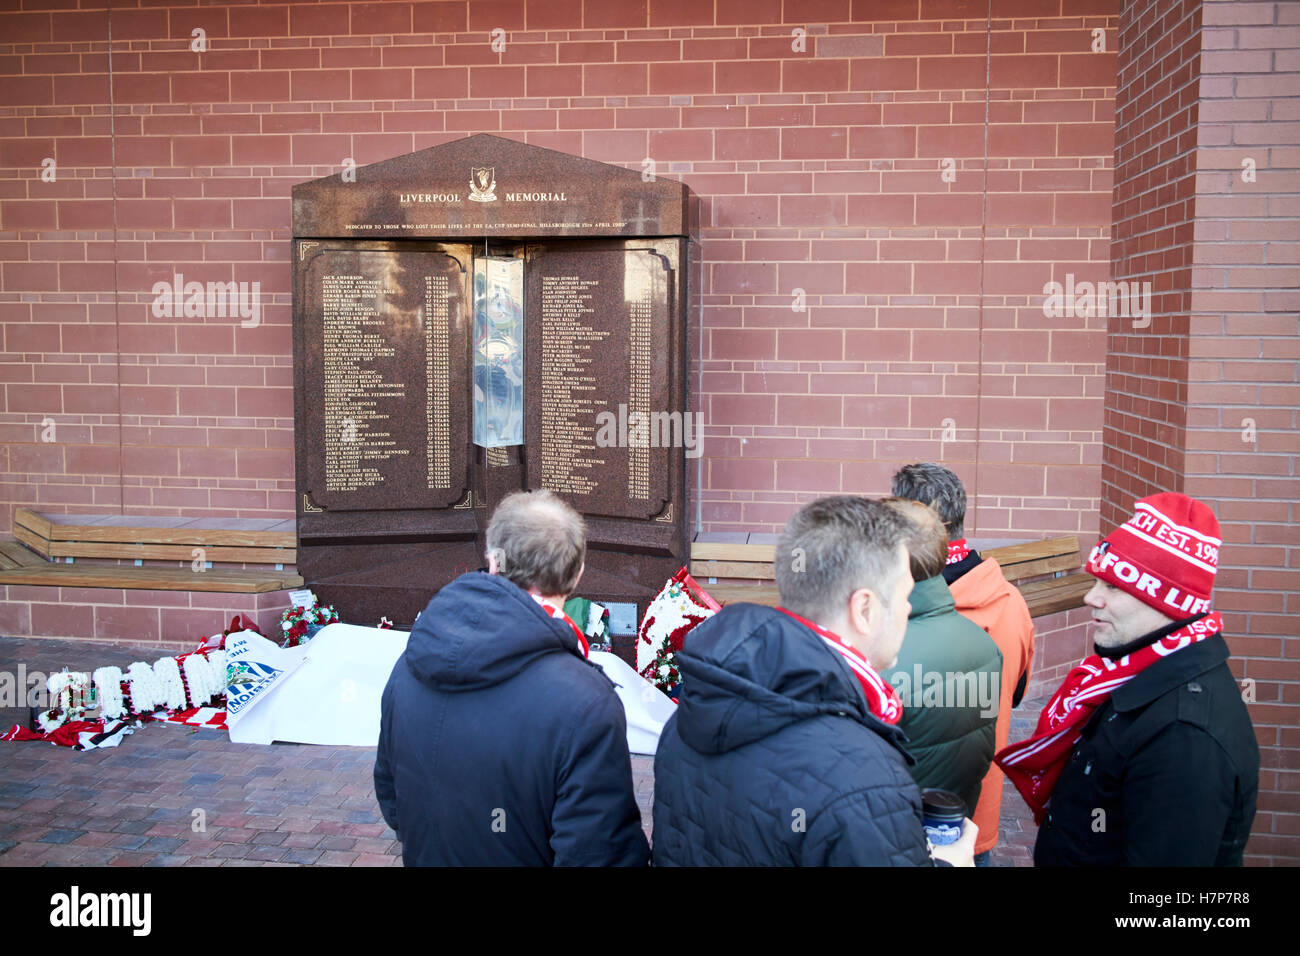 Fan pagare rispetta al memoriale di hillsborough anfield liverpool fc regno unito Foto Stock